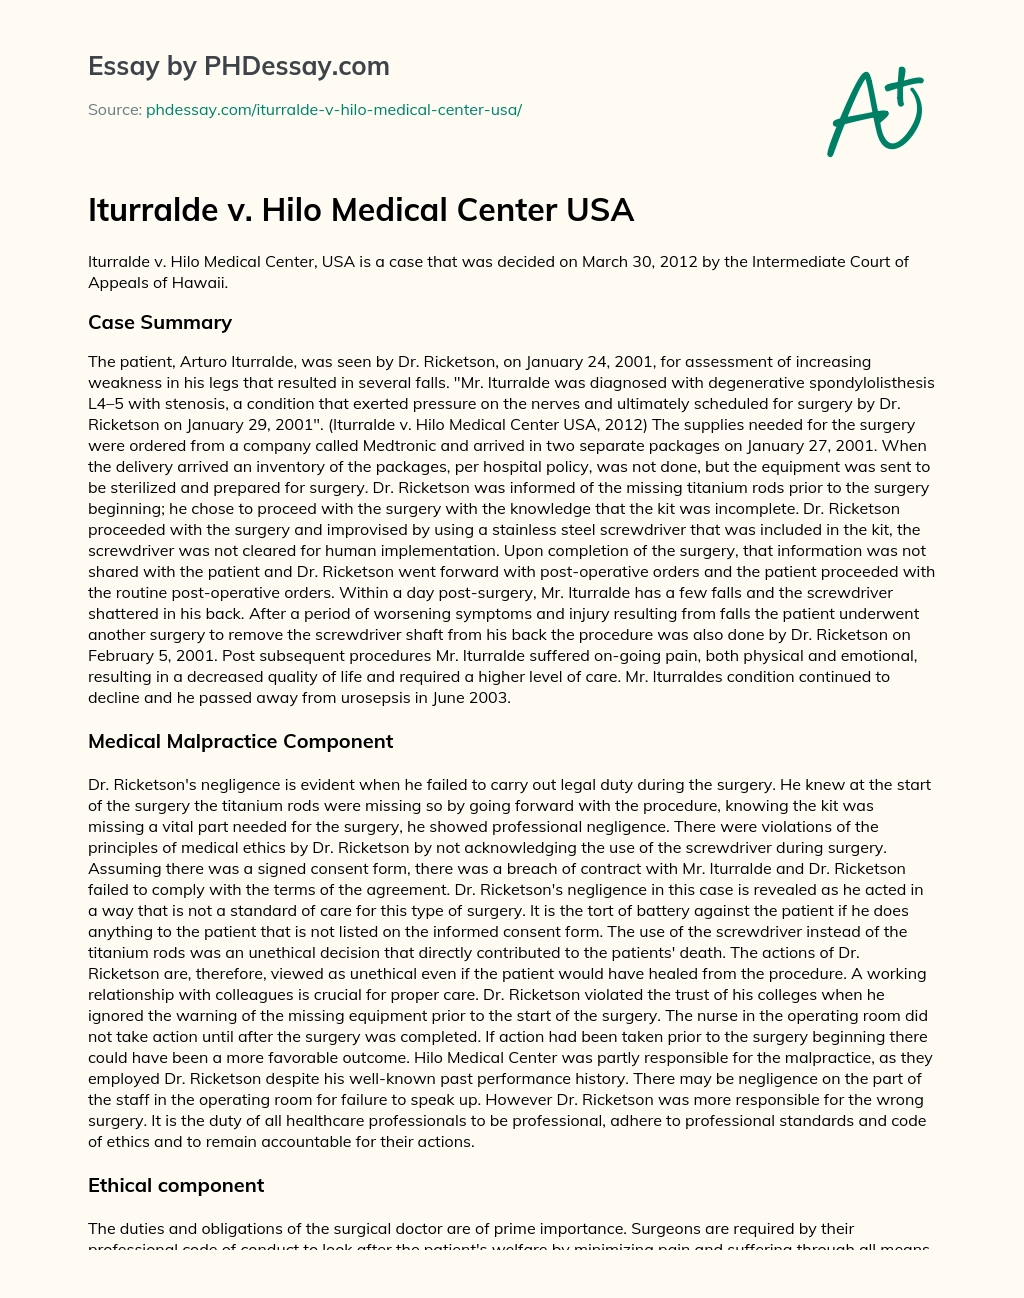 Iturralde v. Hilo Medical Center USA essay